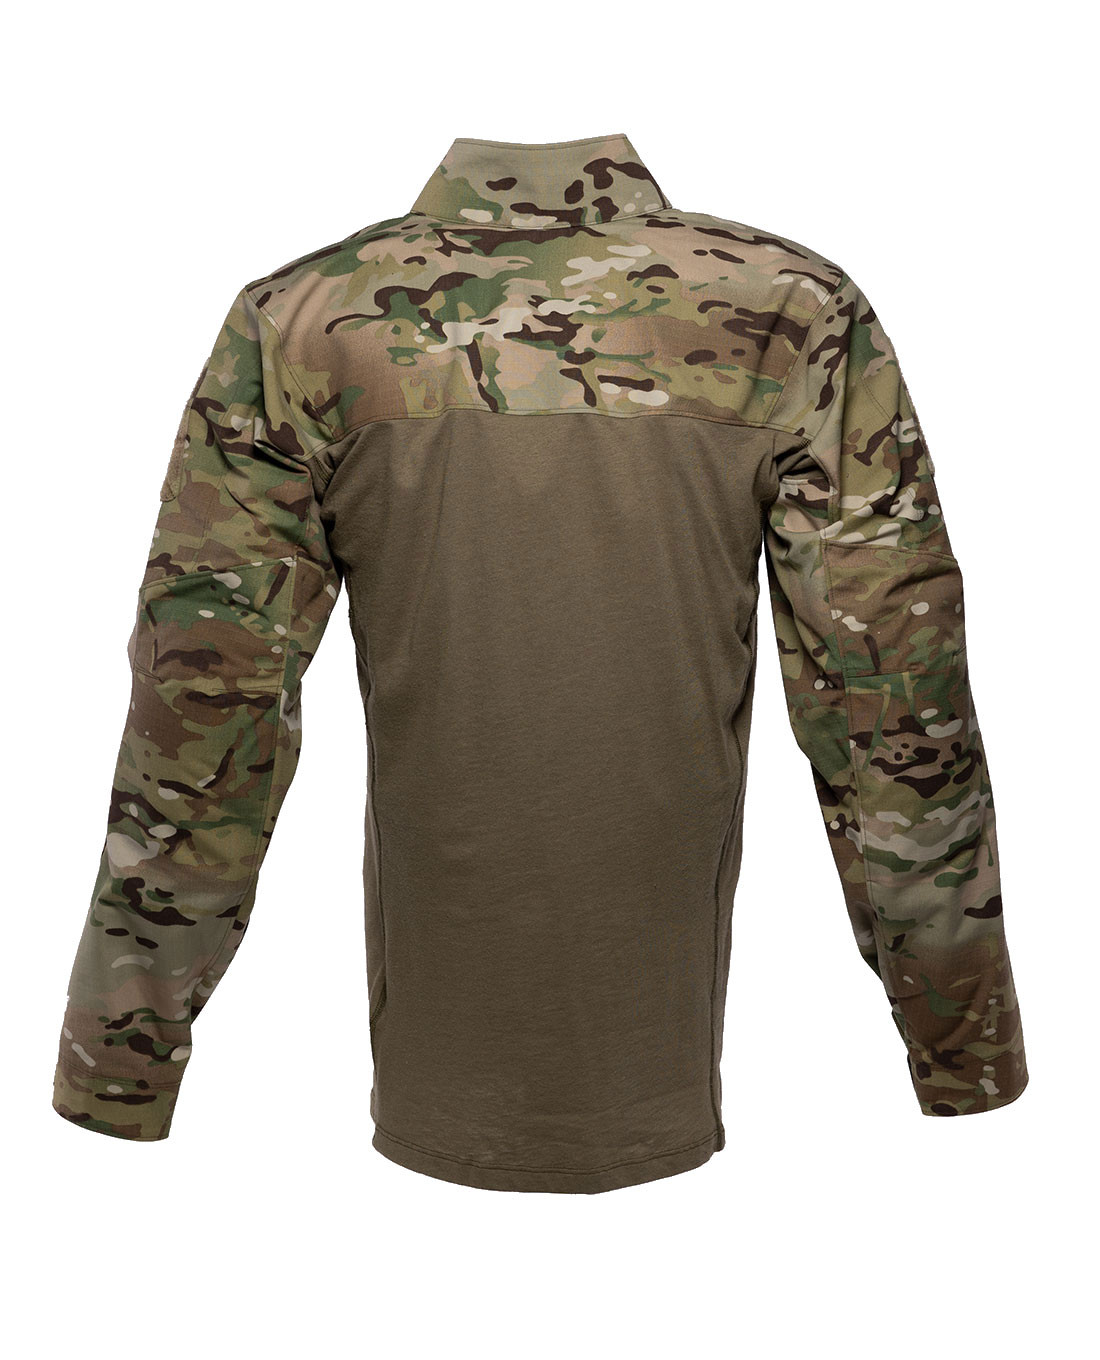 Arc'teryx LEAF Assault Shirt AR Men's (Gen2) Multicam - 23557.Multicam ...